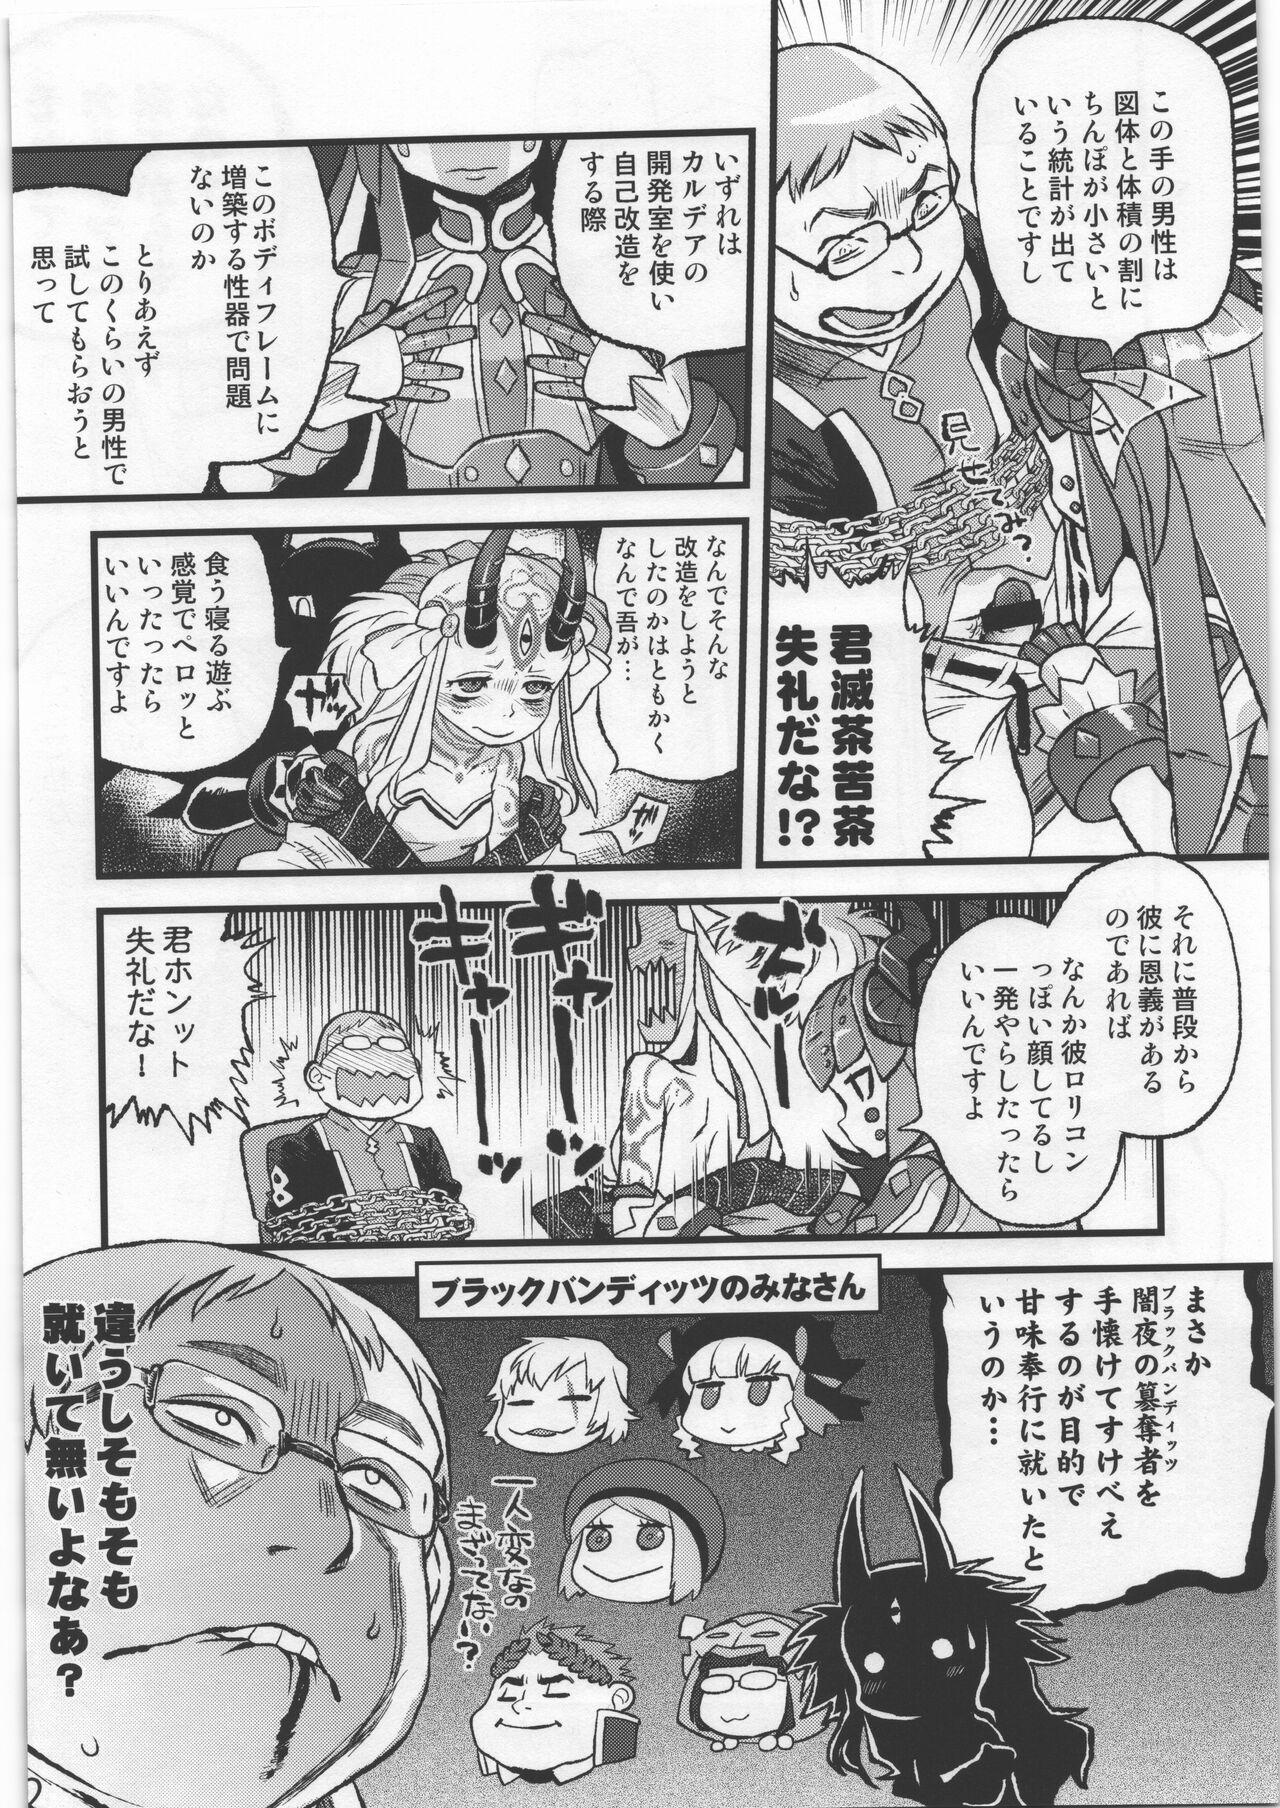 Fitness Ibara no Yuki Tetsu no Hana - Fate grand order Sloppy Blow Job - Page 11